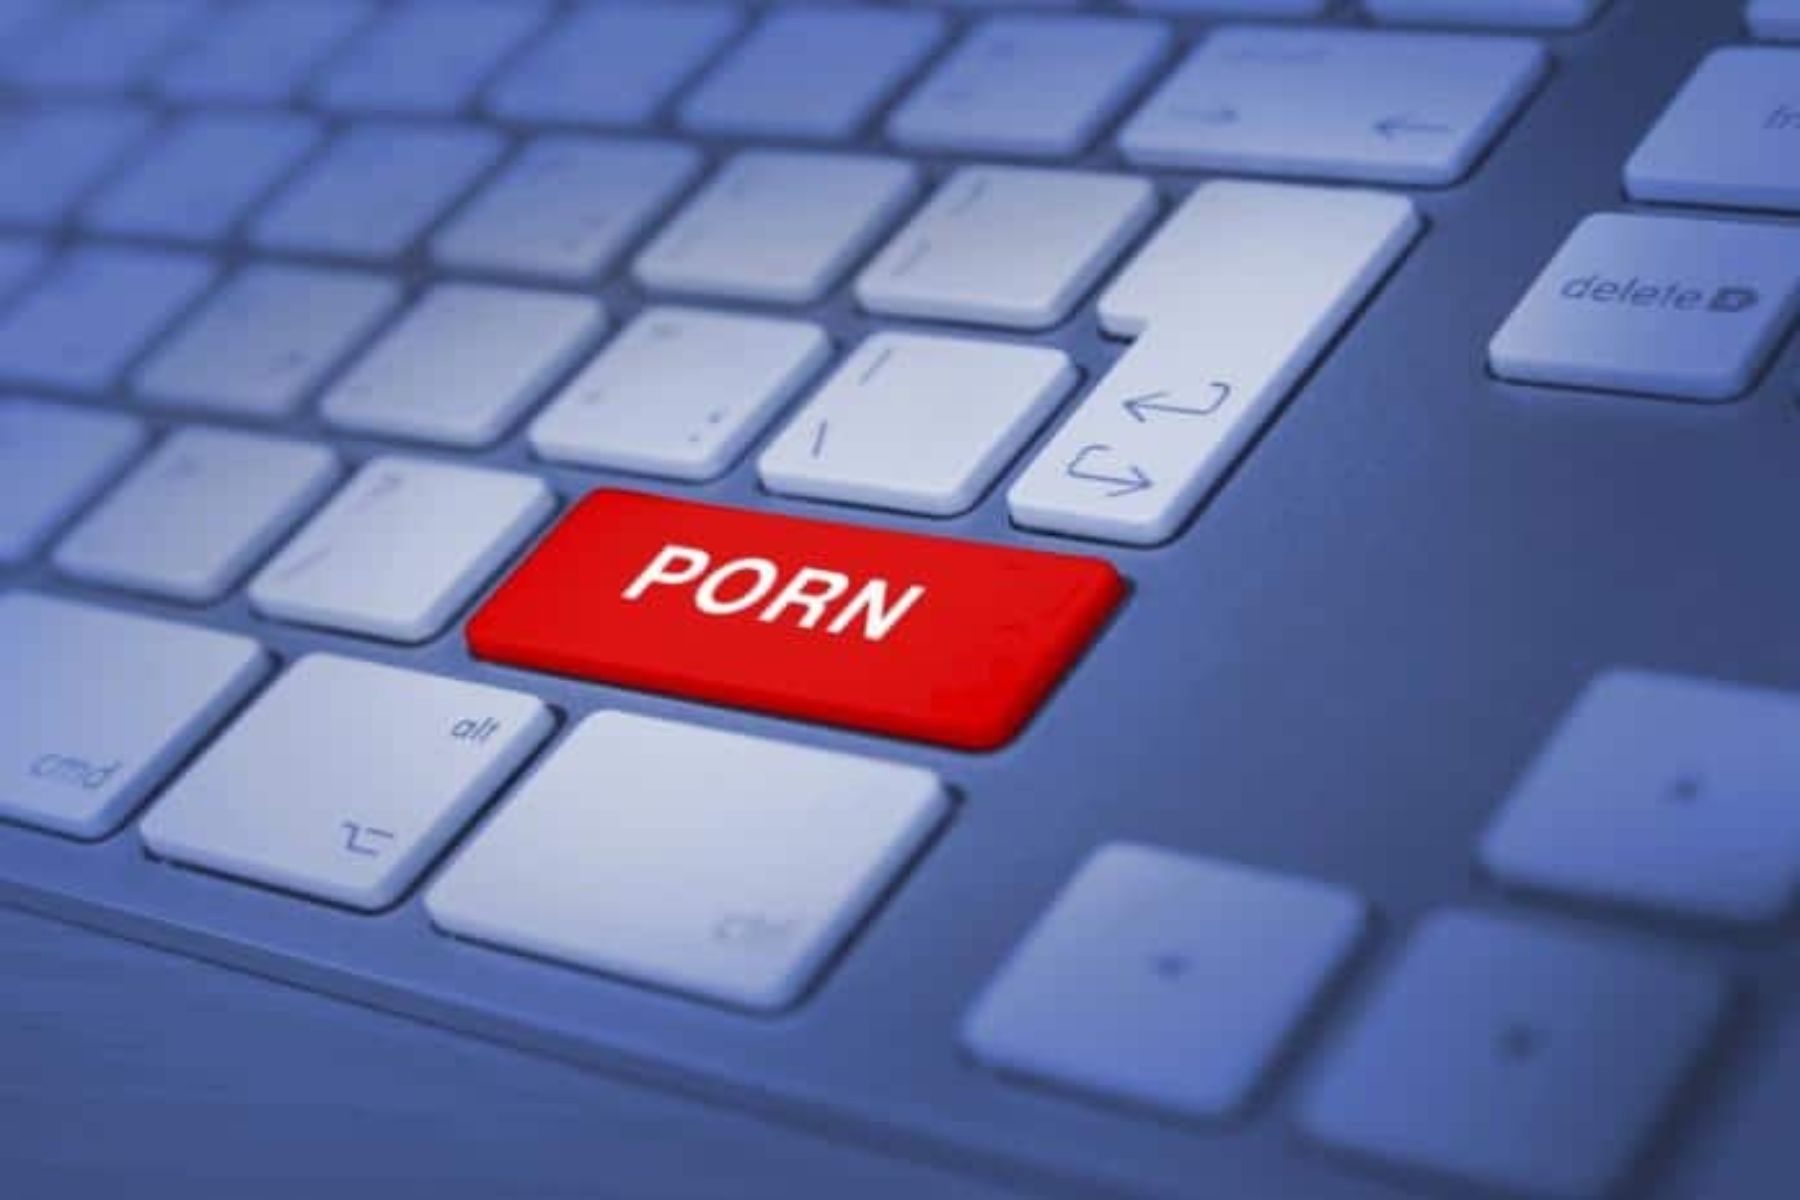 Πορνογραφία: Η υπερβολική παρακολούθηση βλάπτει τη σεξουαλική σας υγεία